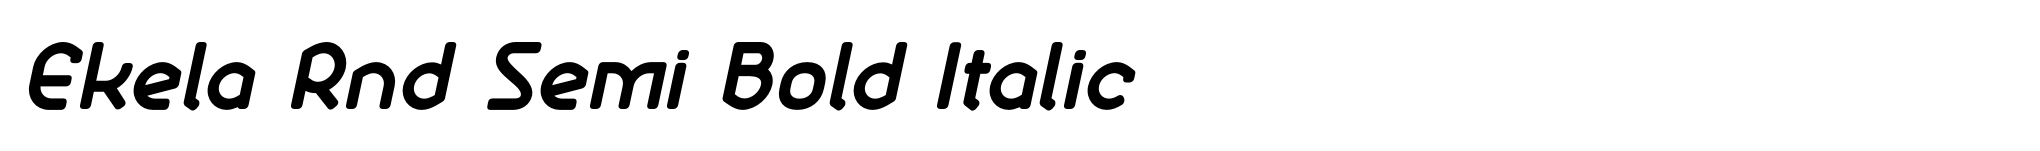 Ekela Rnd Semi Bold Italic image